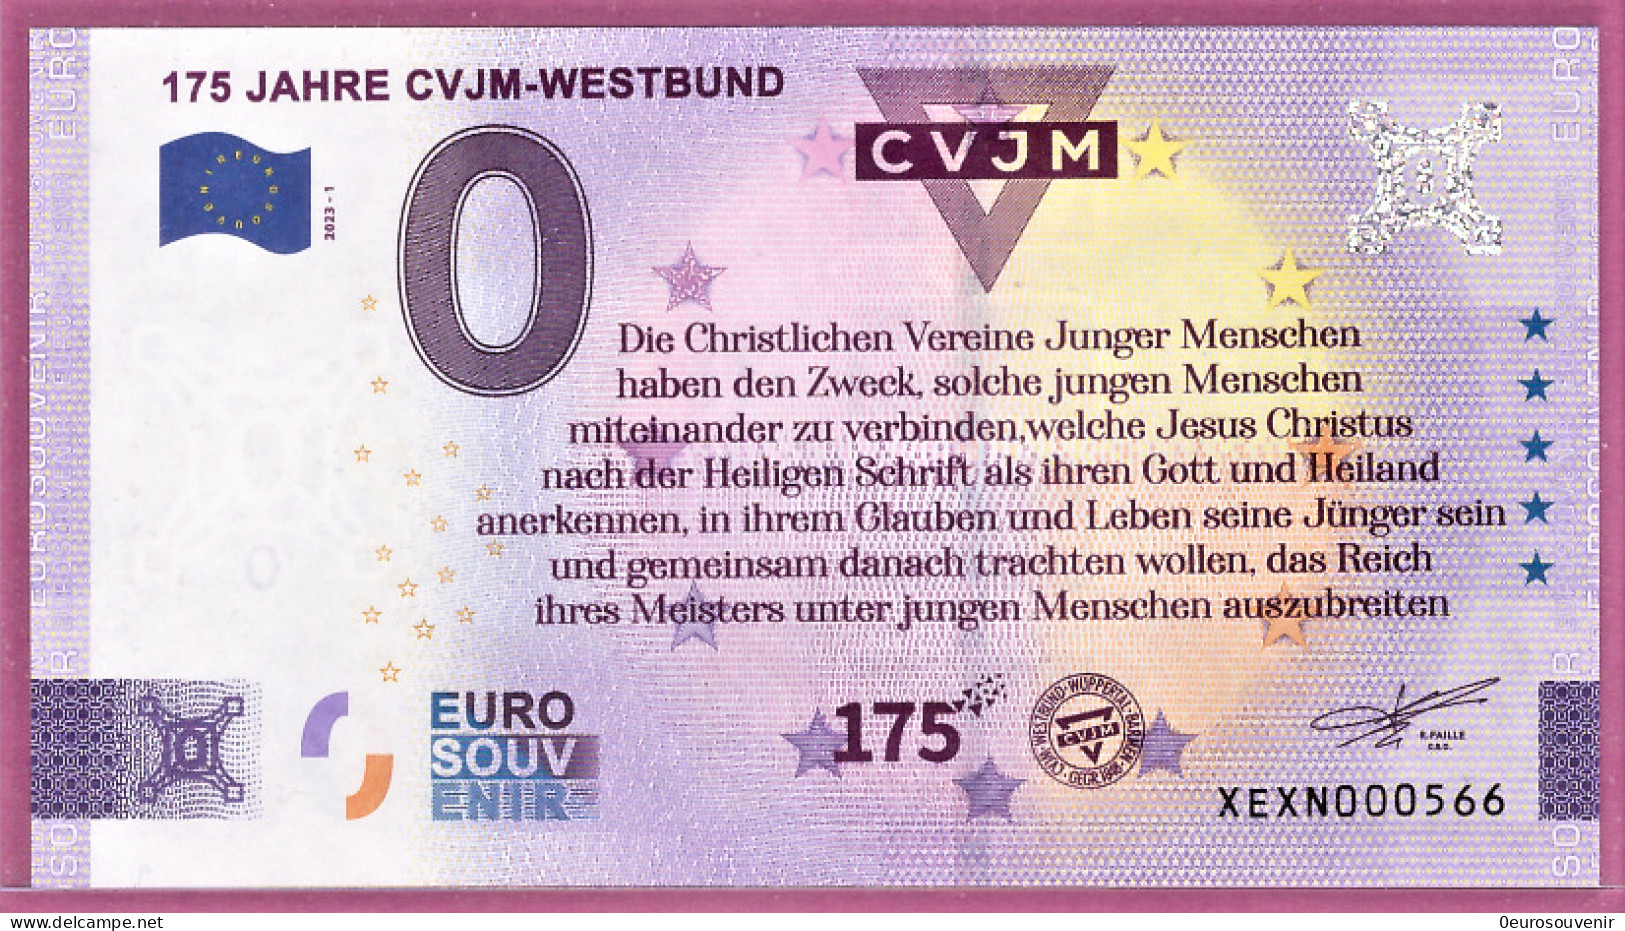 0-Euro XEXN 2023-1 175 JAHRE CVJM-WESTBUND SPENDENSCHEIN - Privatentwürfe